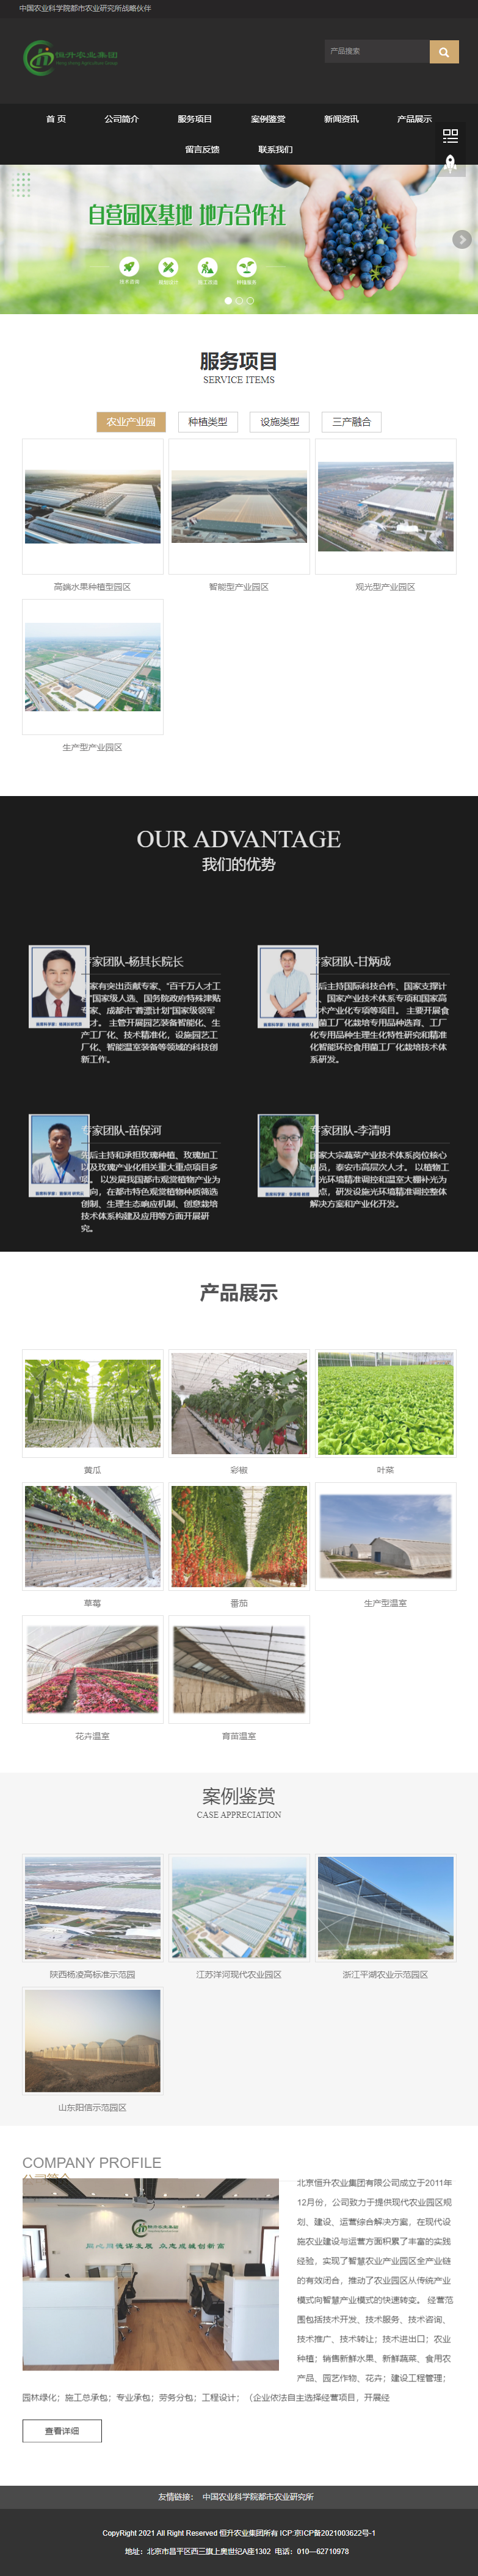 北京恒升农业集团有限公司网站案例